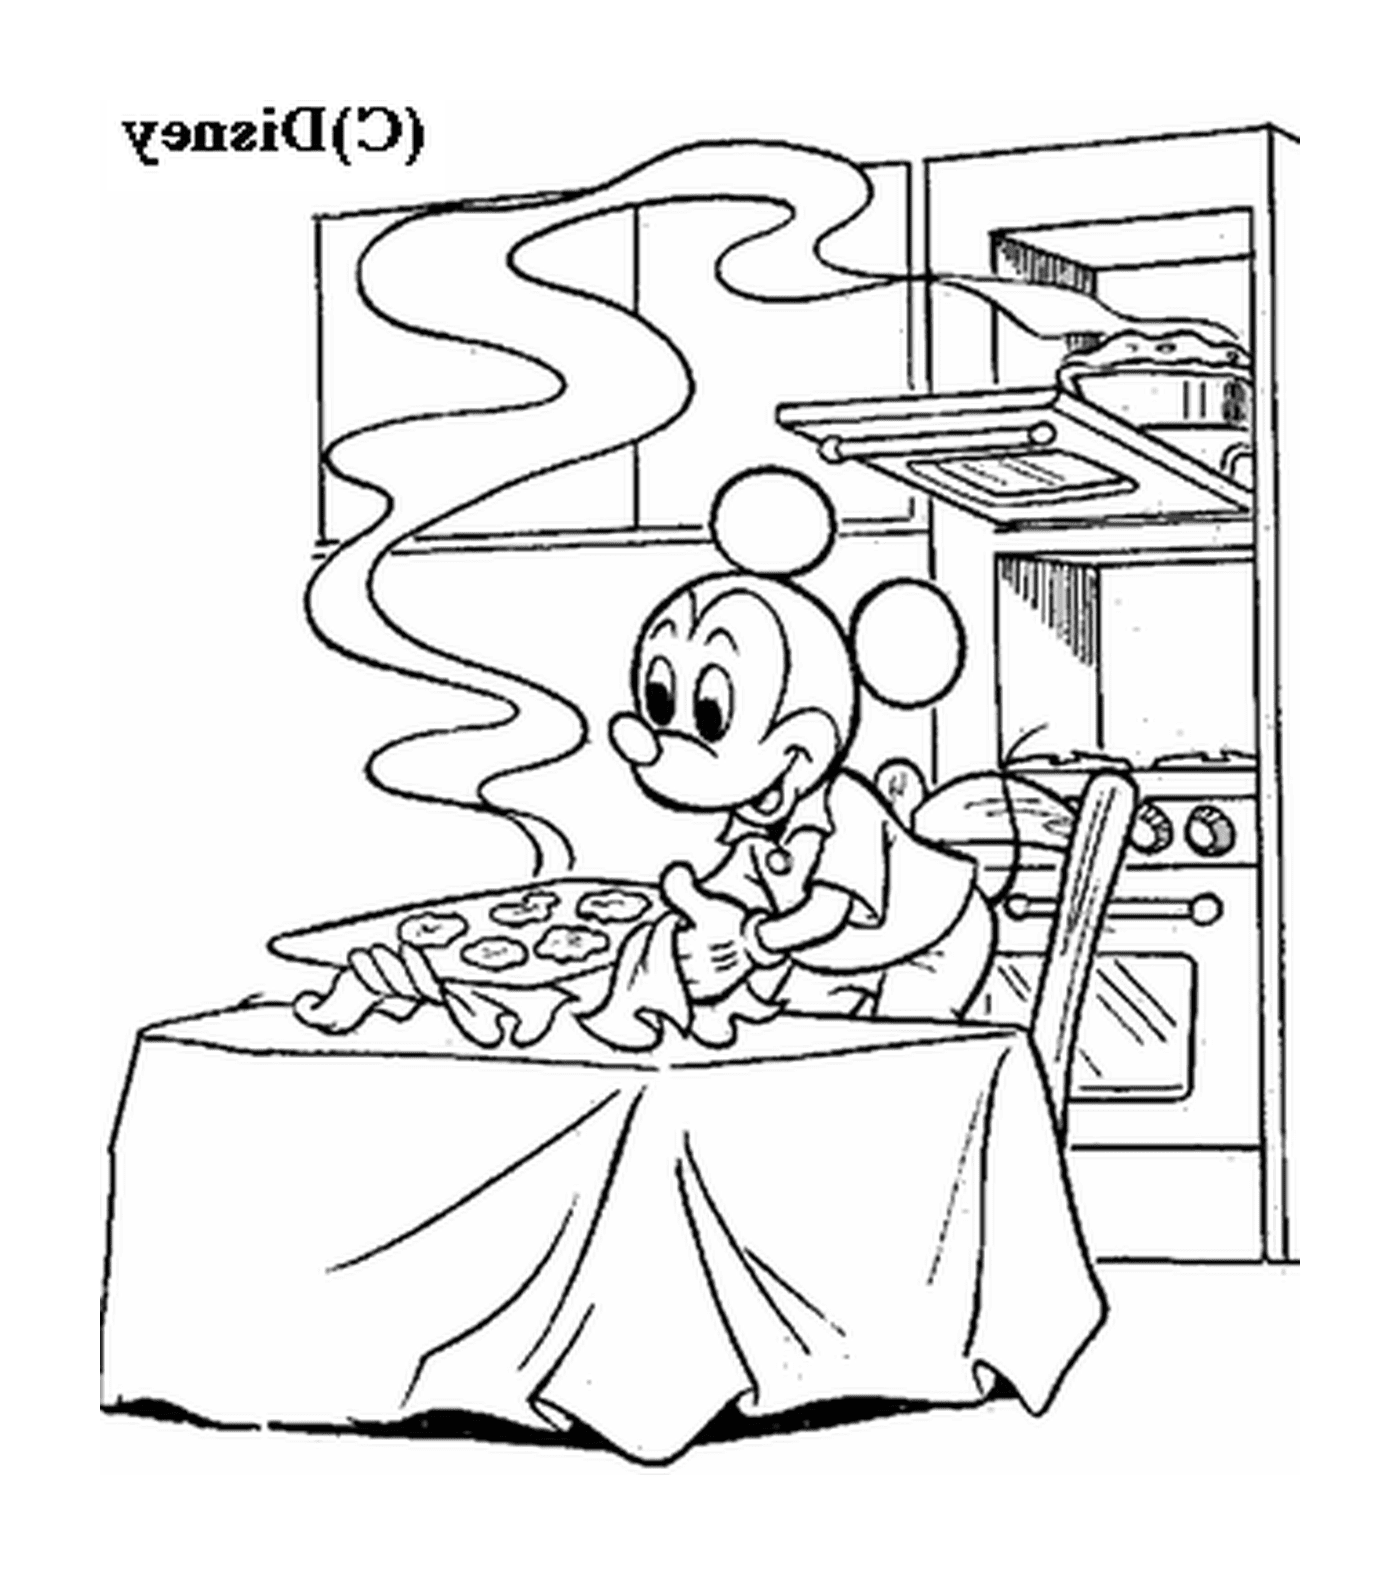  米奇做的饼干: 一只老鼠坐在炉灶前的桌子上 